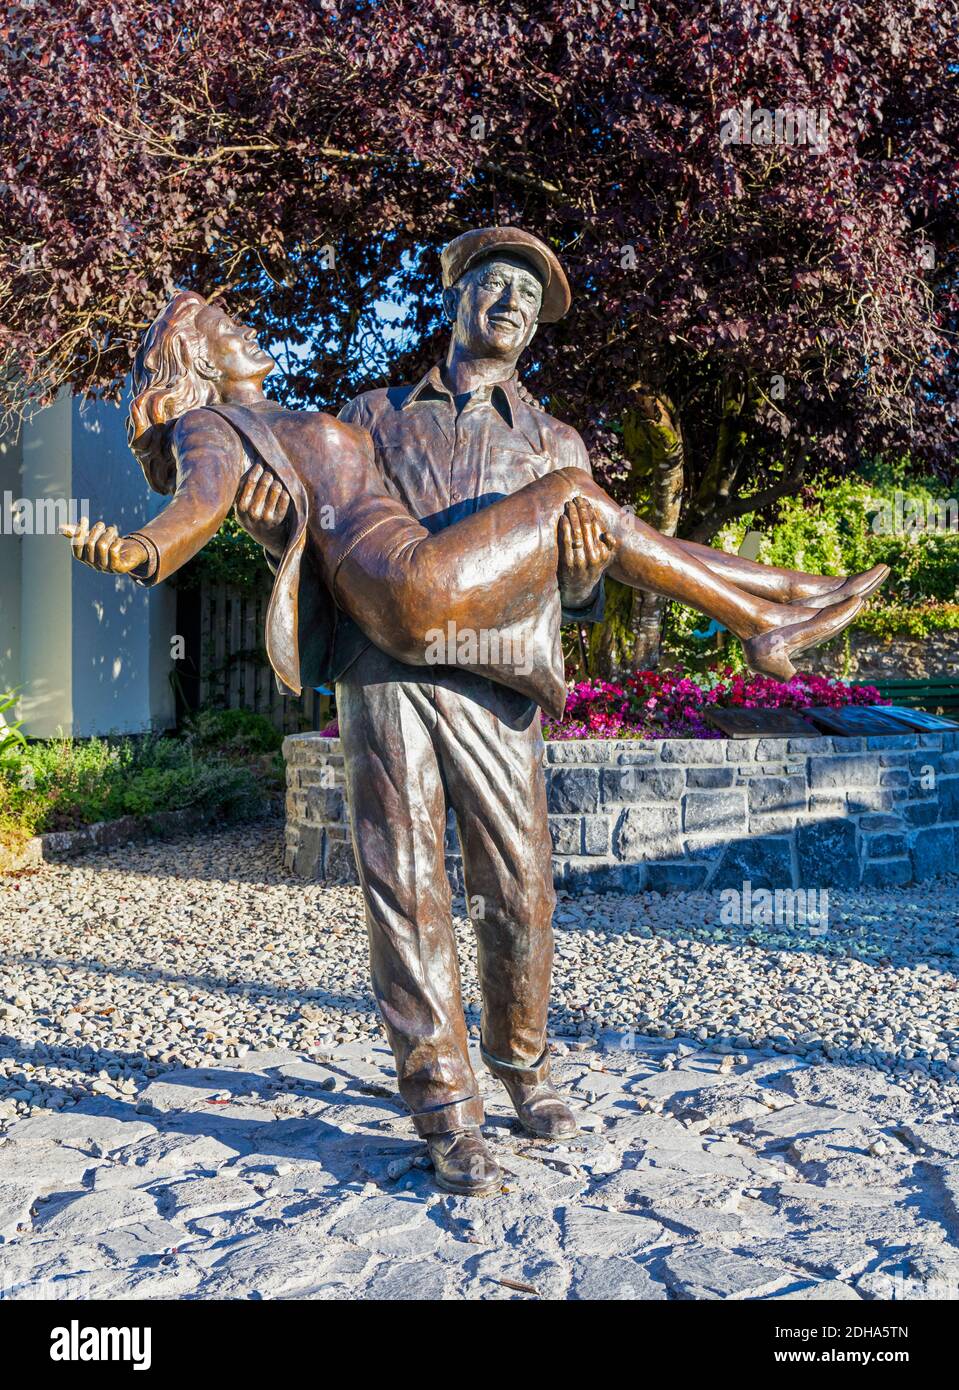 Der ruhige Mann Statue, Cong, Grafschaft Mayo, Connemara, Republik Irland. Eire. Die Statue ist auf der theatrical Freigabe Poster für den Film und s Stockfoto